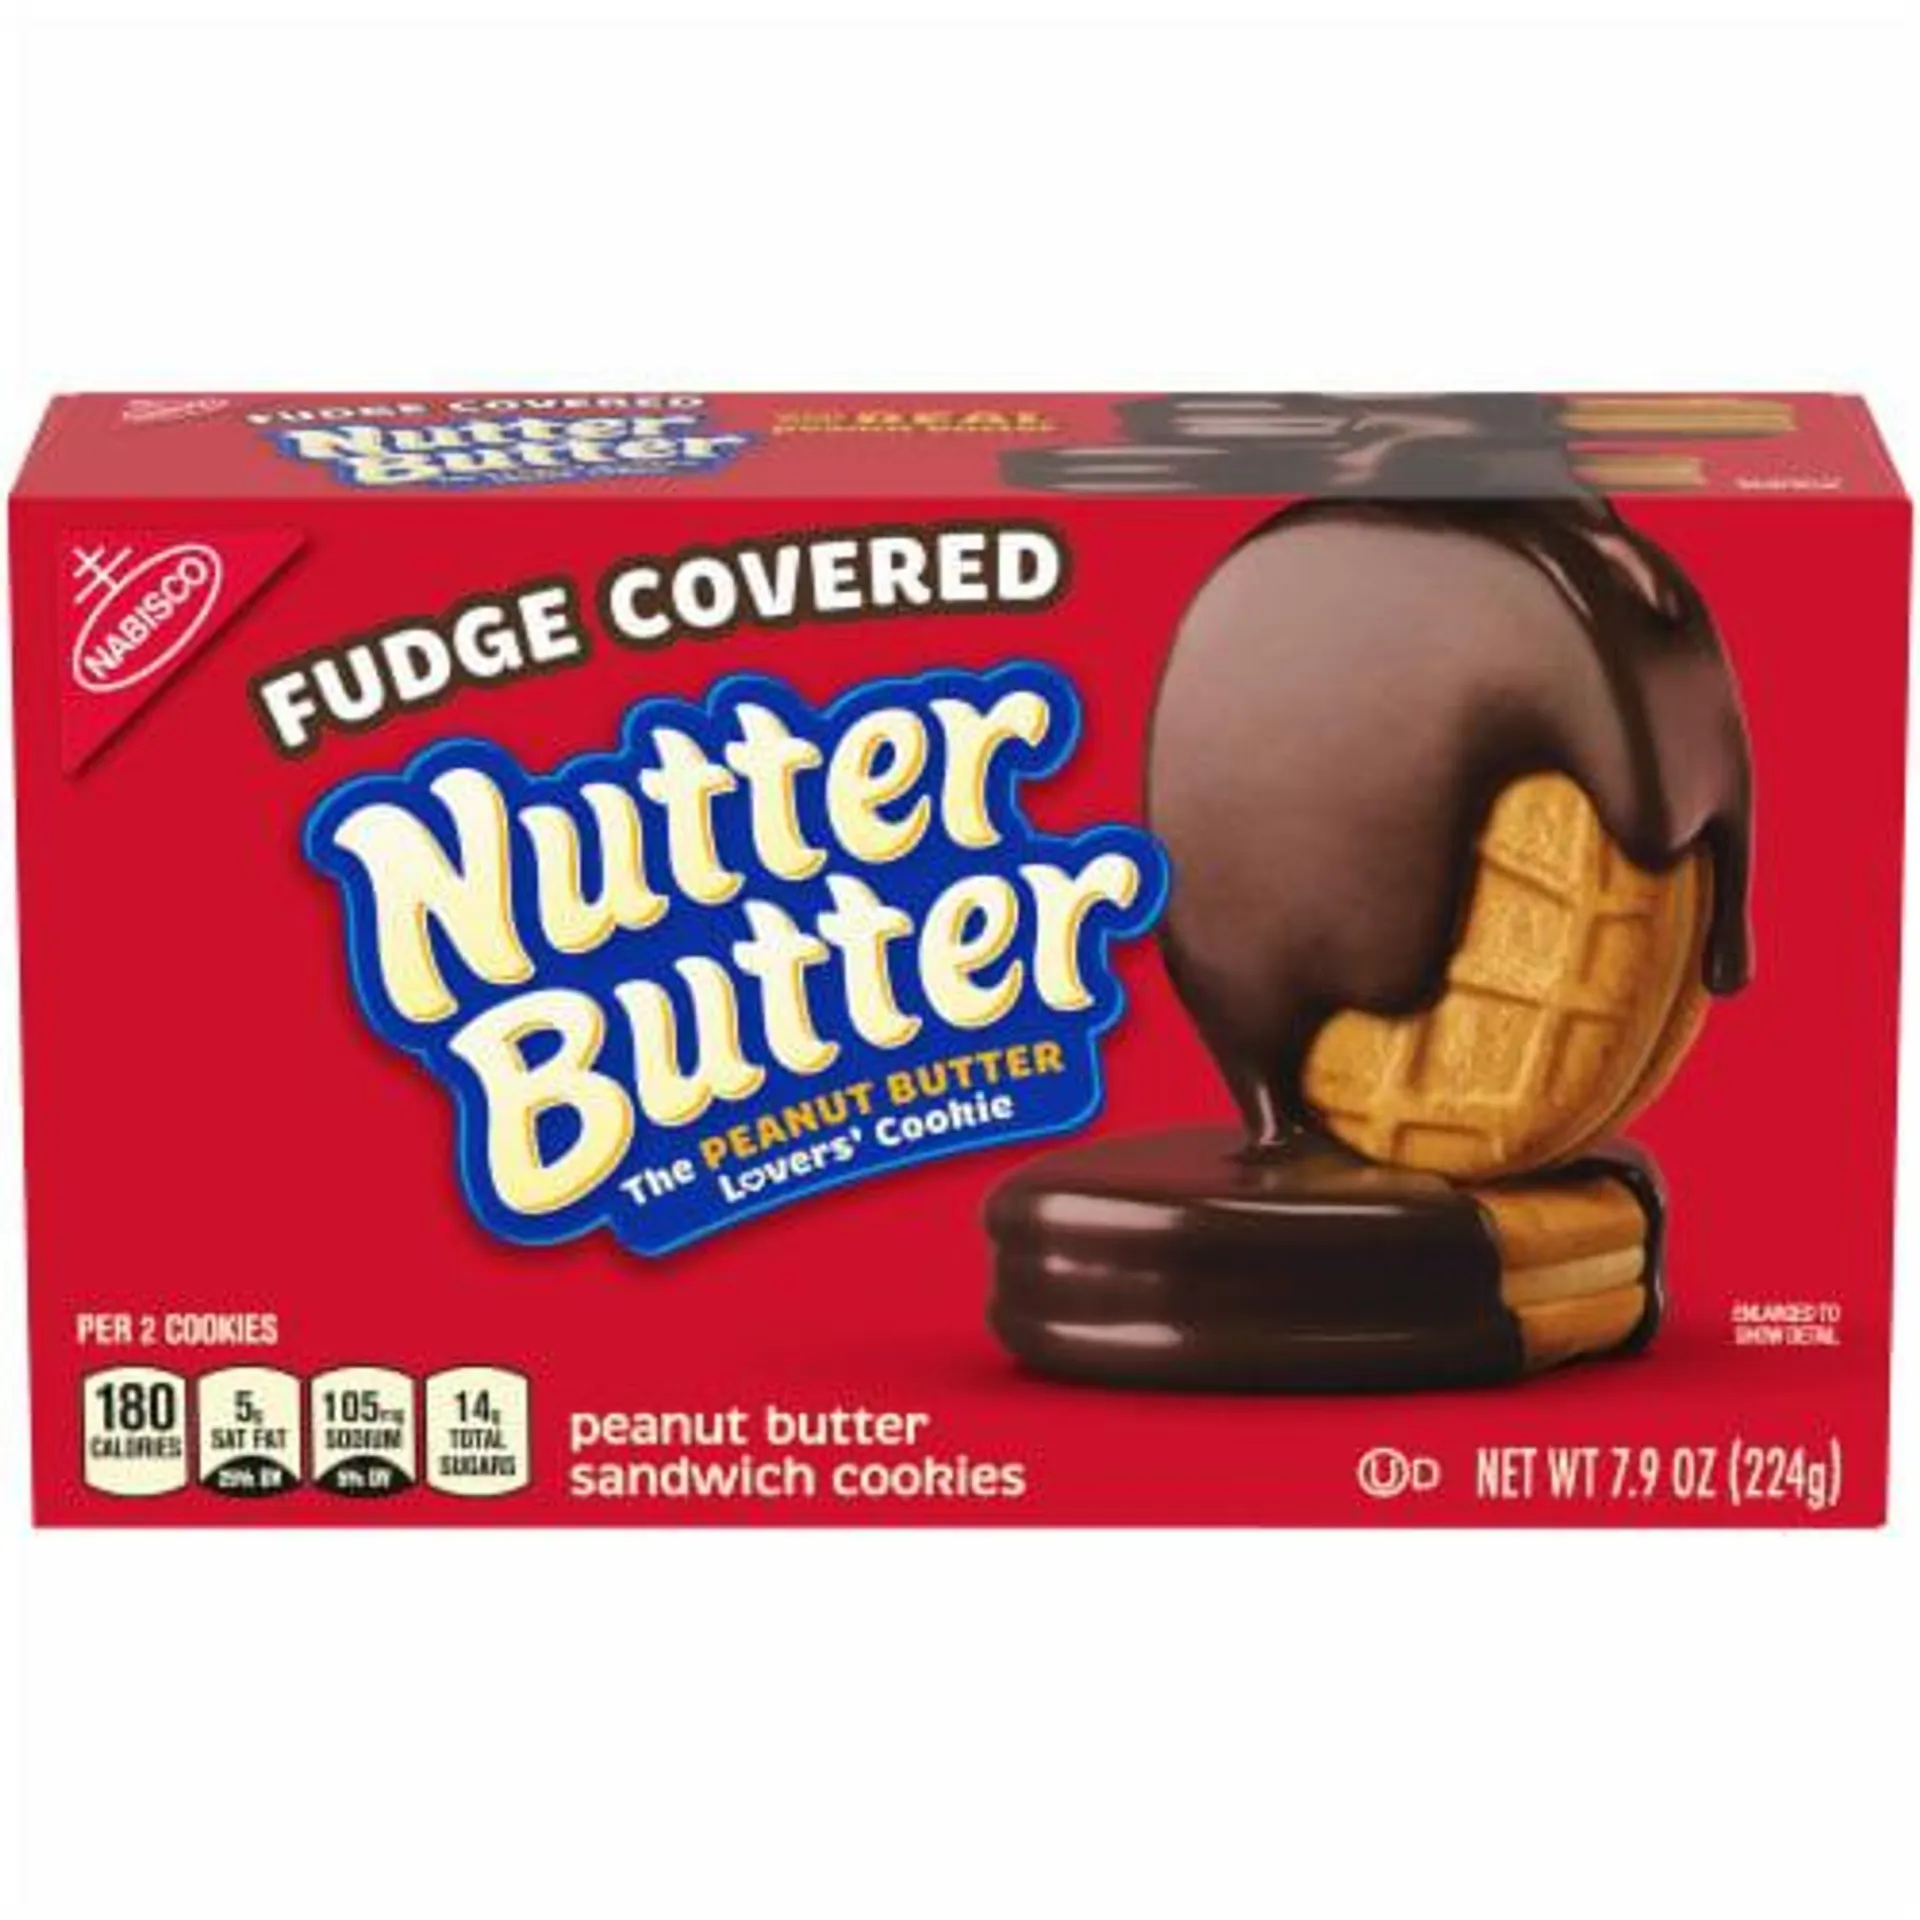 Classic Nutter Butter Peanut Butter Sandwich Cookies